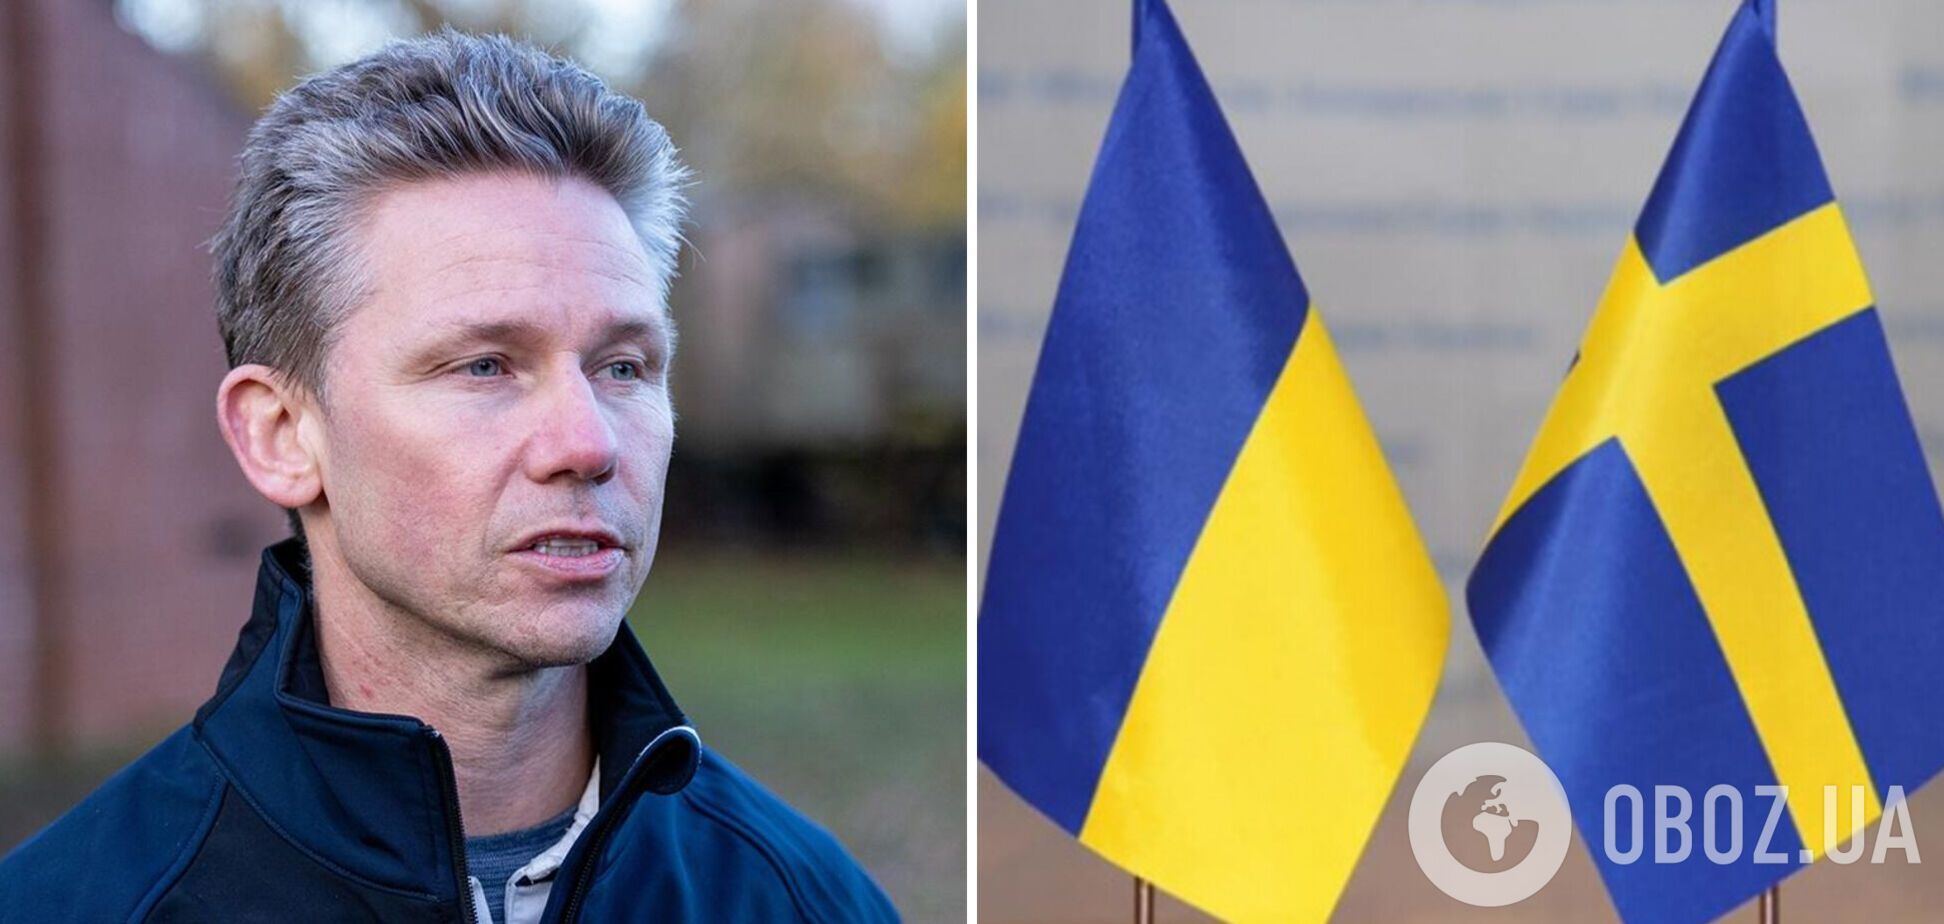 Швеция предоставит Украине масштабный пакет военной помощи: входит ПВО и зимняя форма